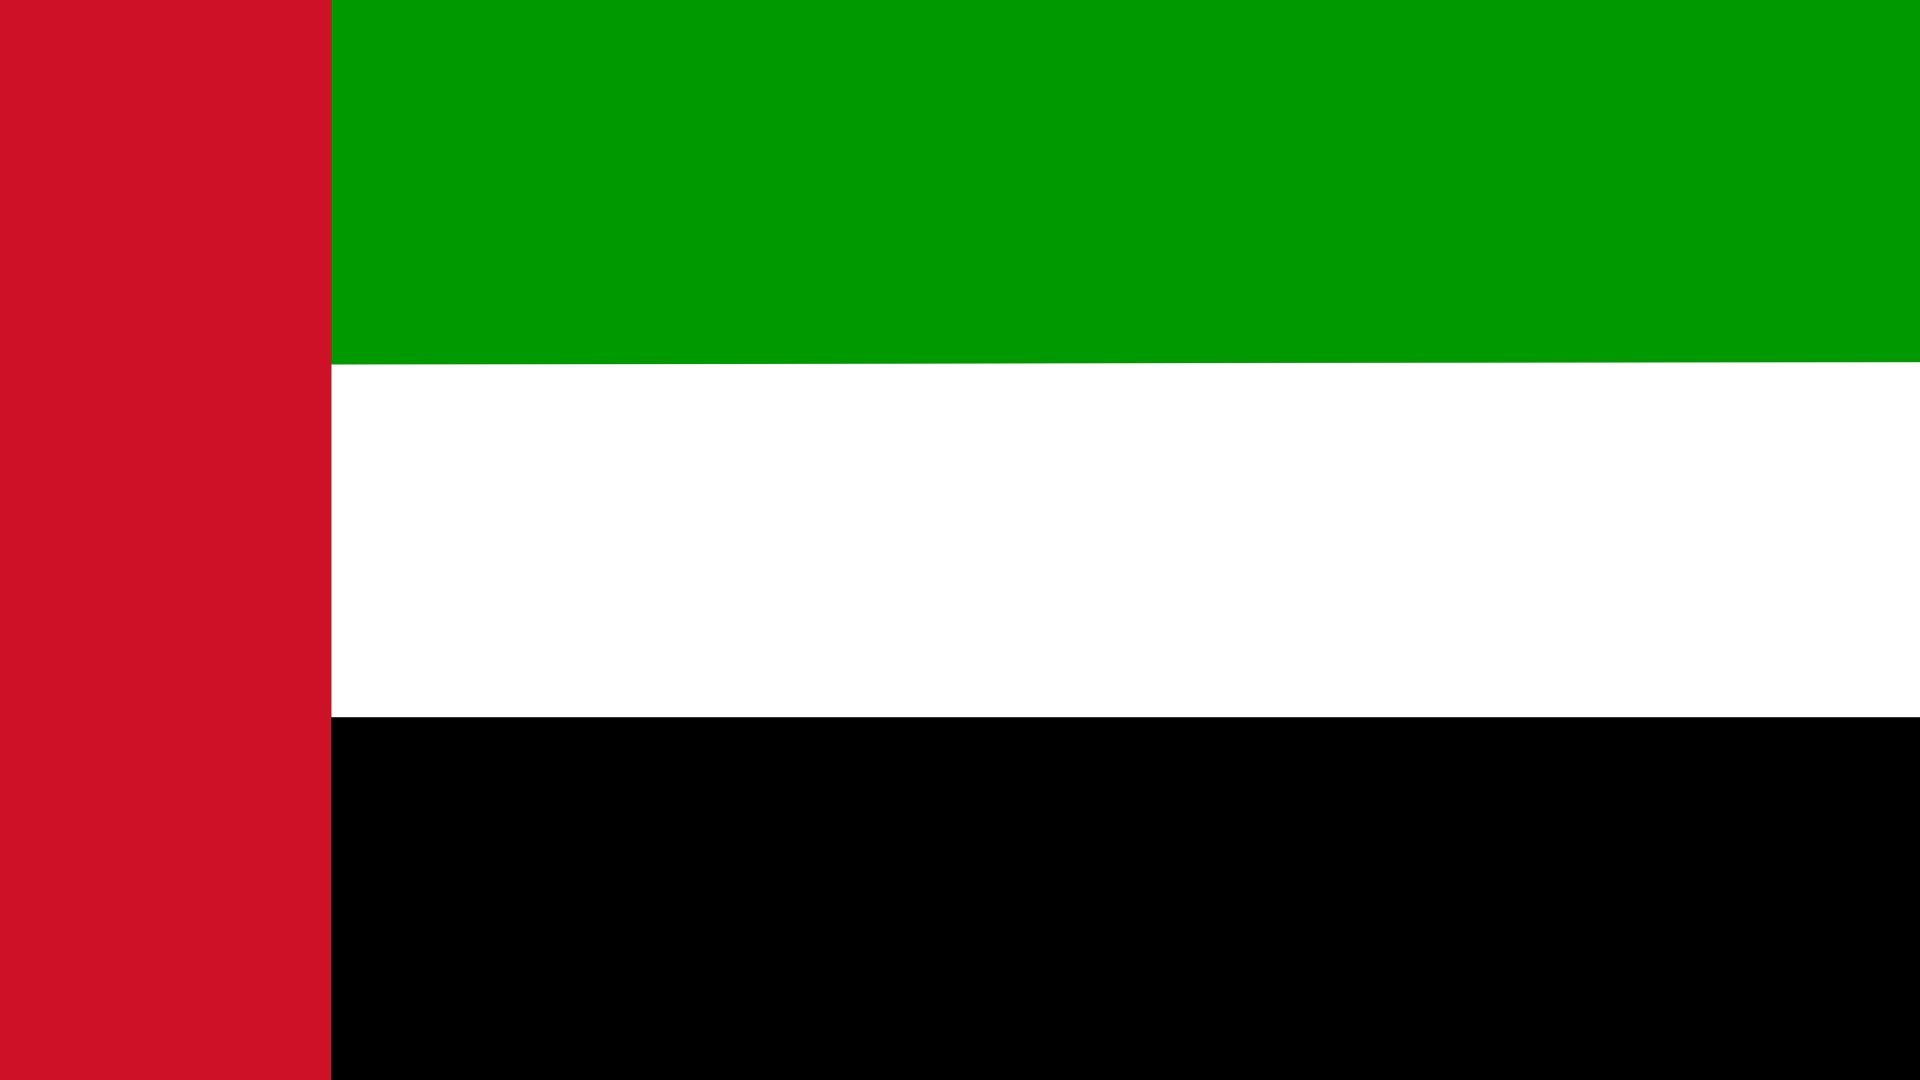 A bandeira dos Emirados Árabes Unidos contém as cores Pan-Arábes vermelho, verde, branco e preto, simbolizando a unidade Arábica.